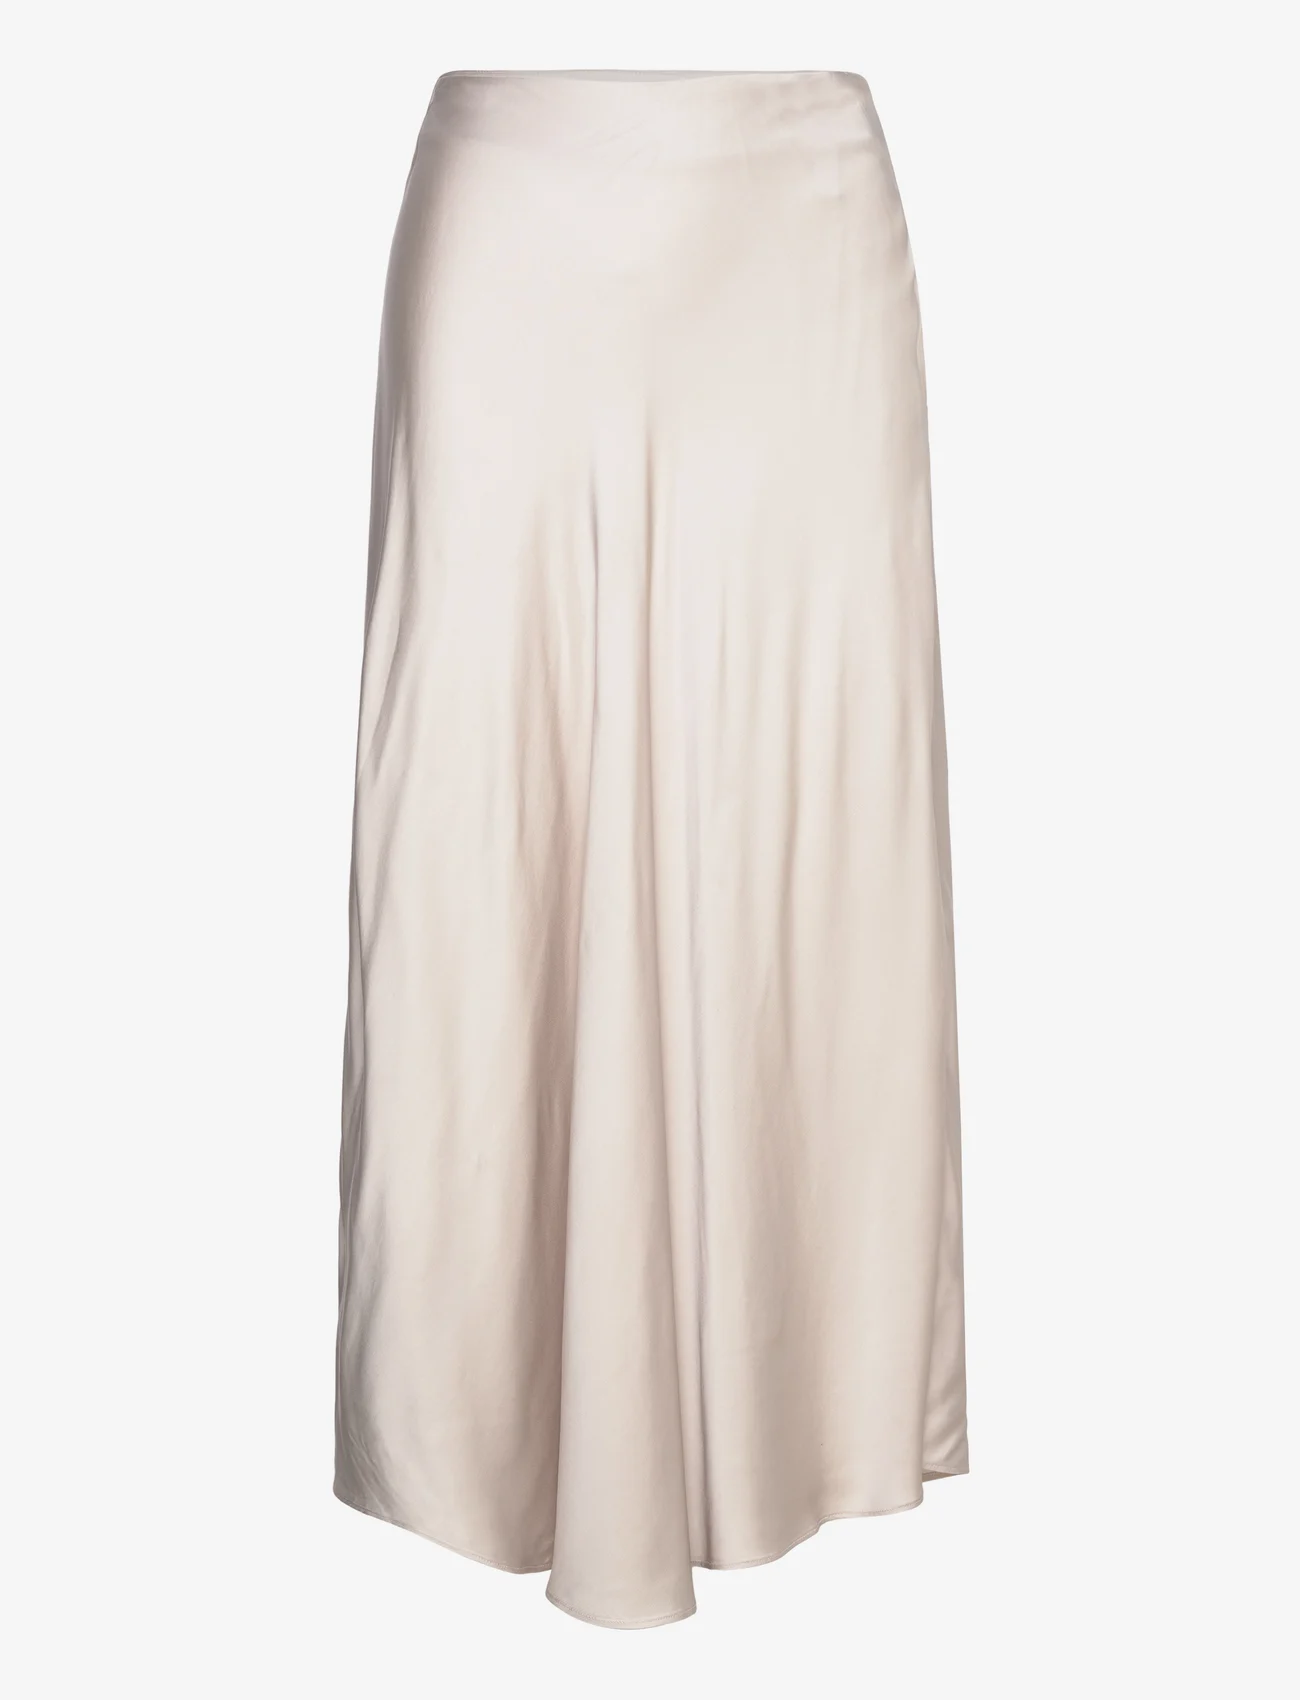 Esprit Casual - Skirts light woven - satengskjørt - light beige - 0